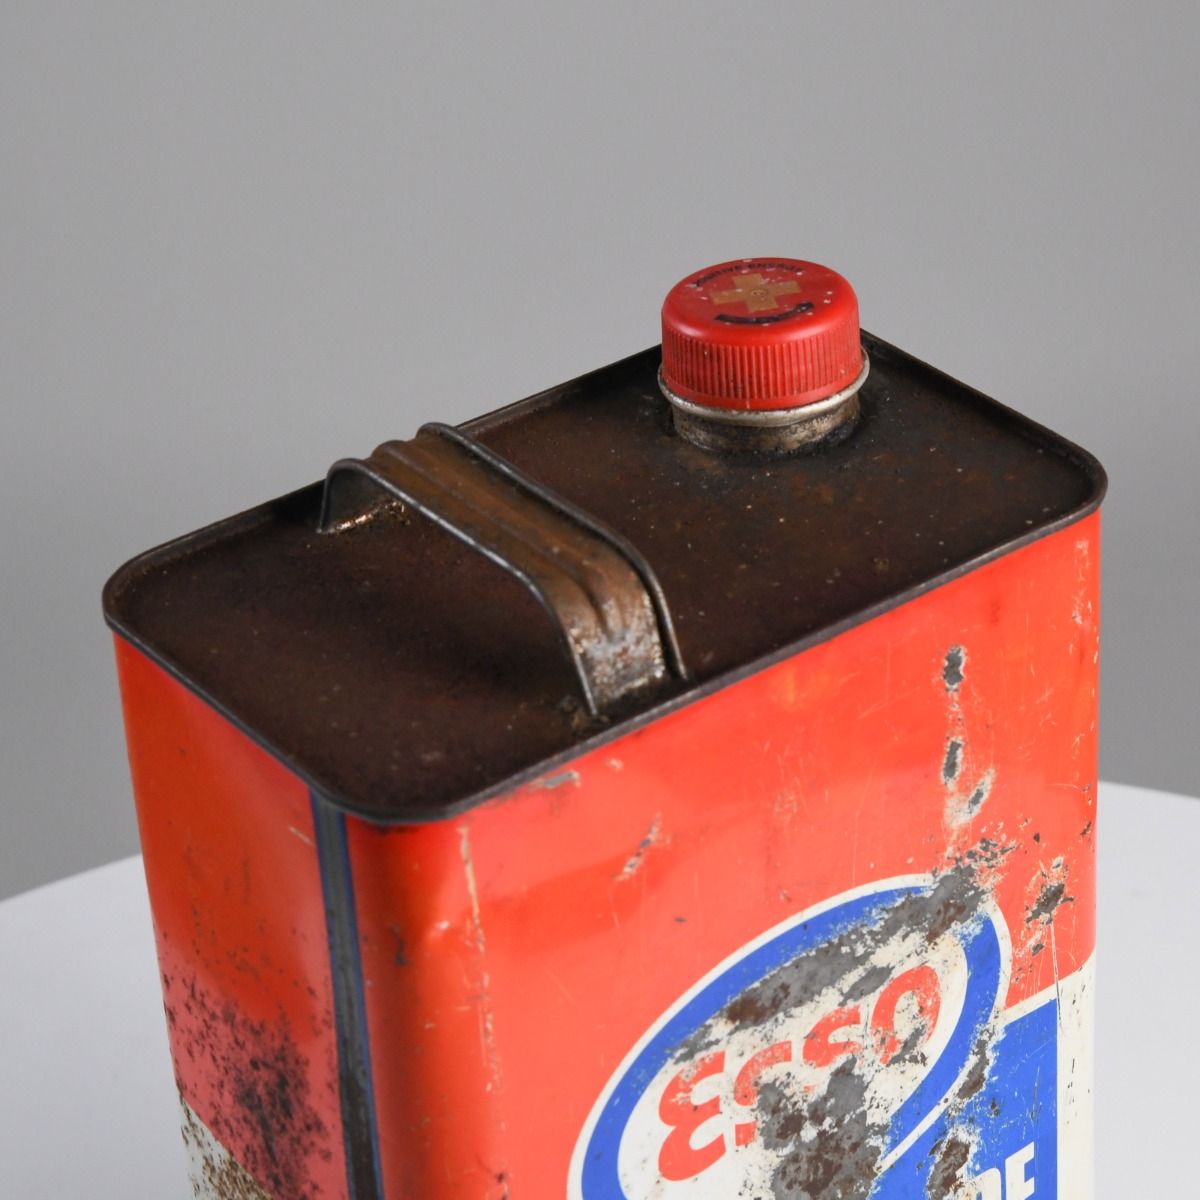 Vintage Esso Multigrade Motoring Oil Can